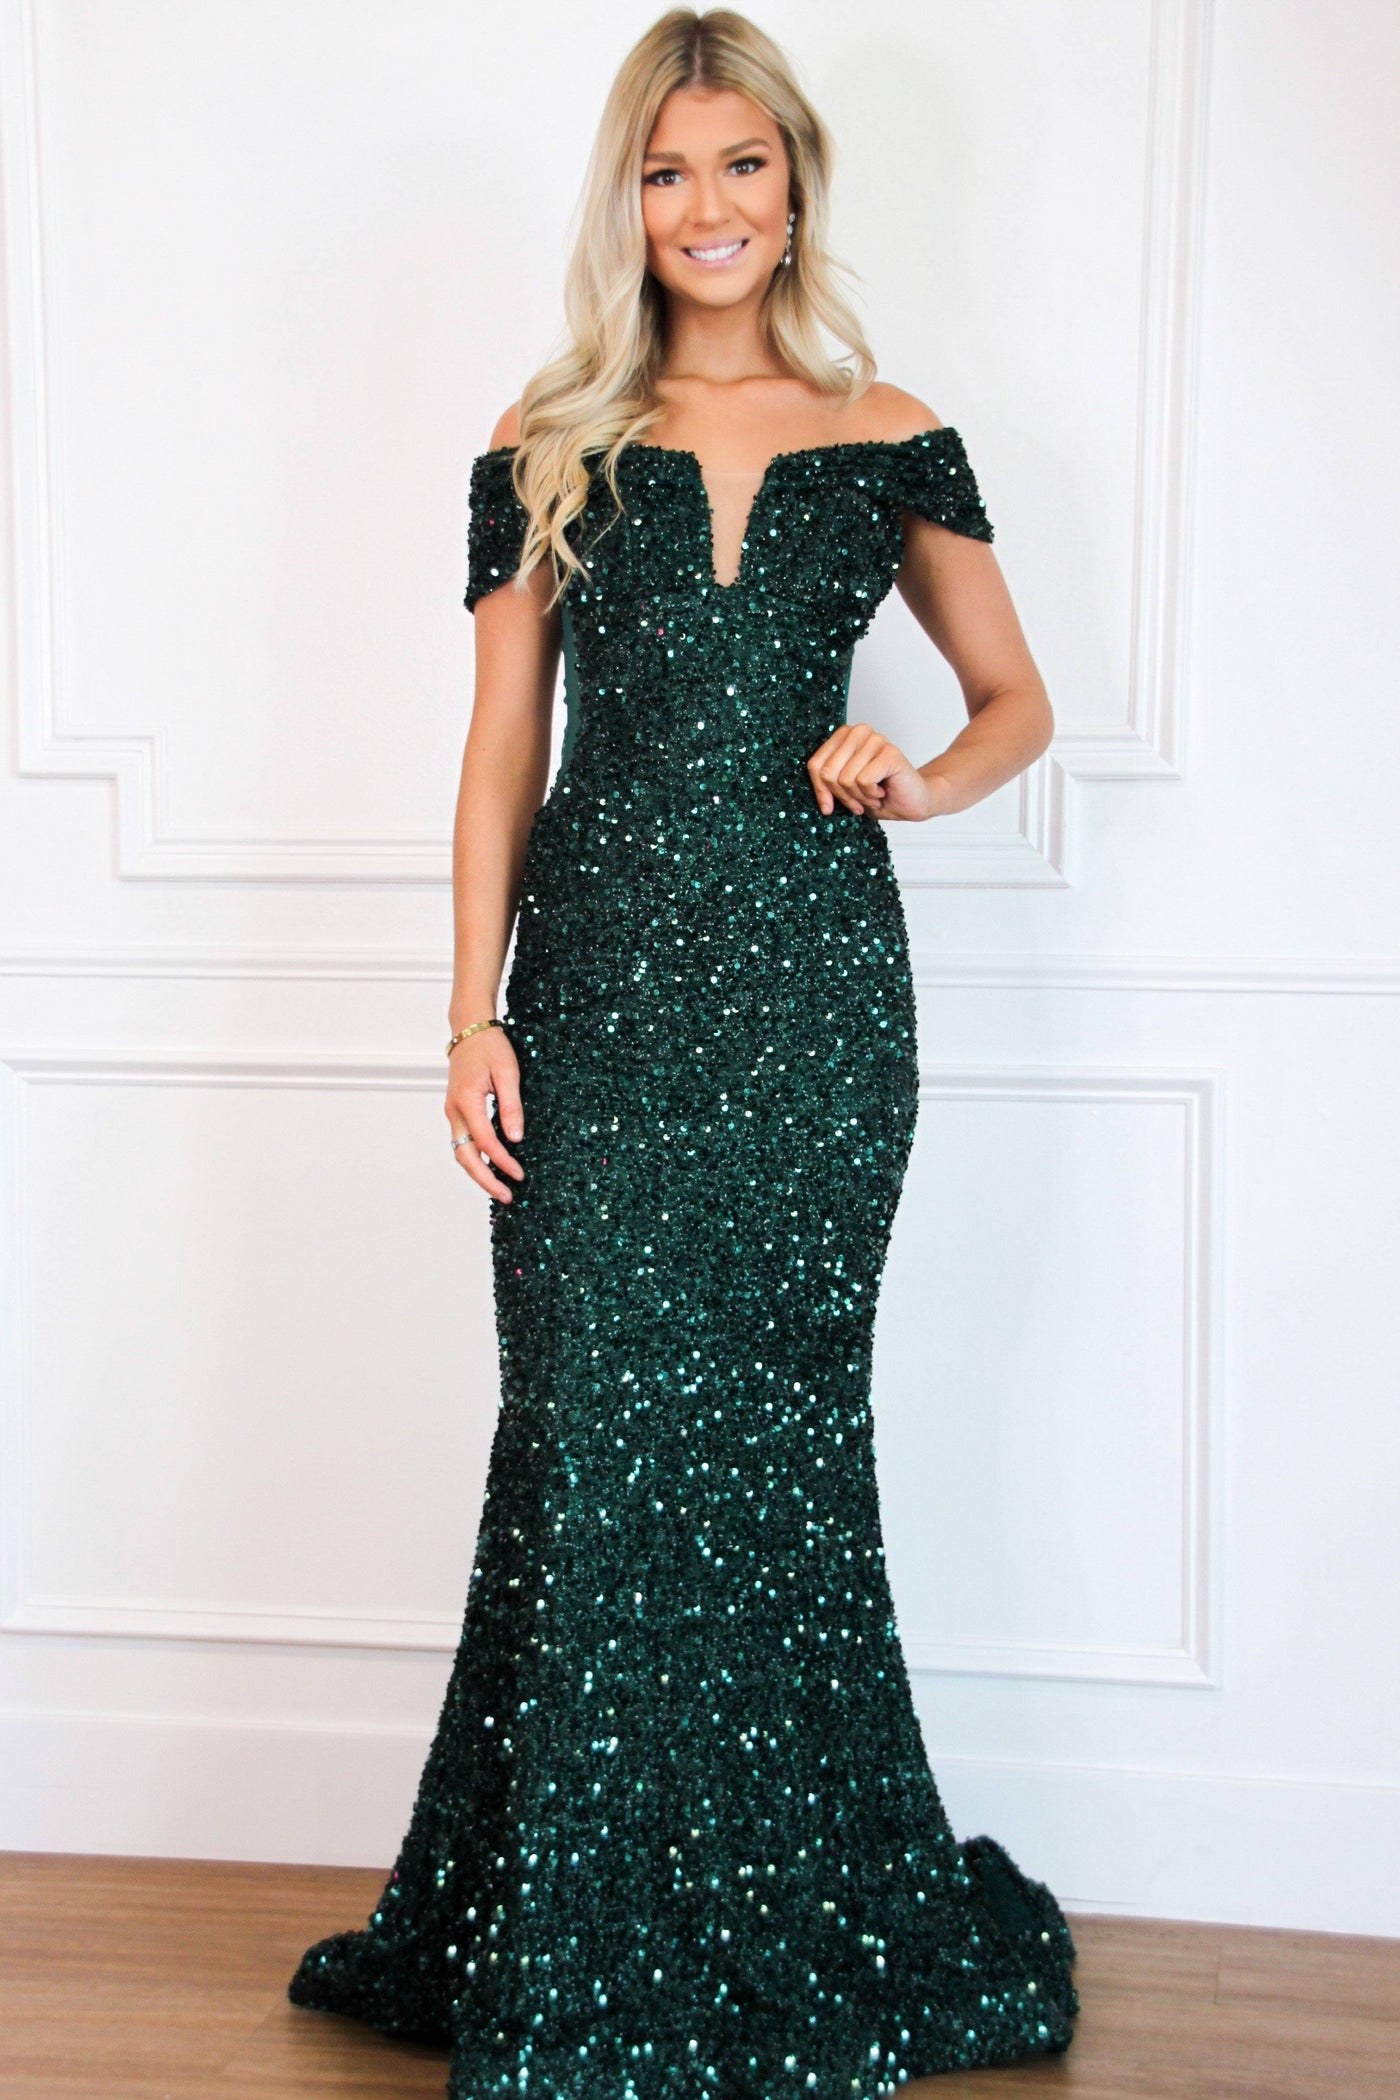 Stardust Sequin Off Shoulder Formal Dress: Emerald - Bella and Bloom Boutique